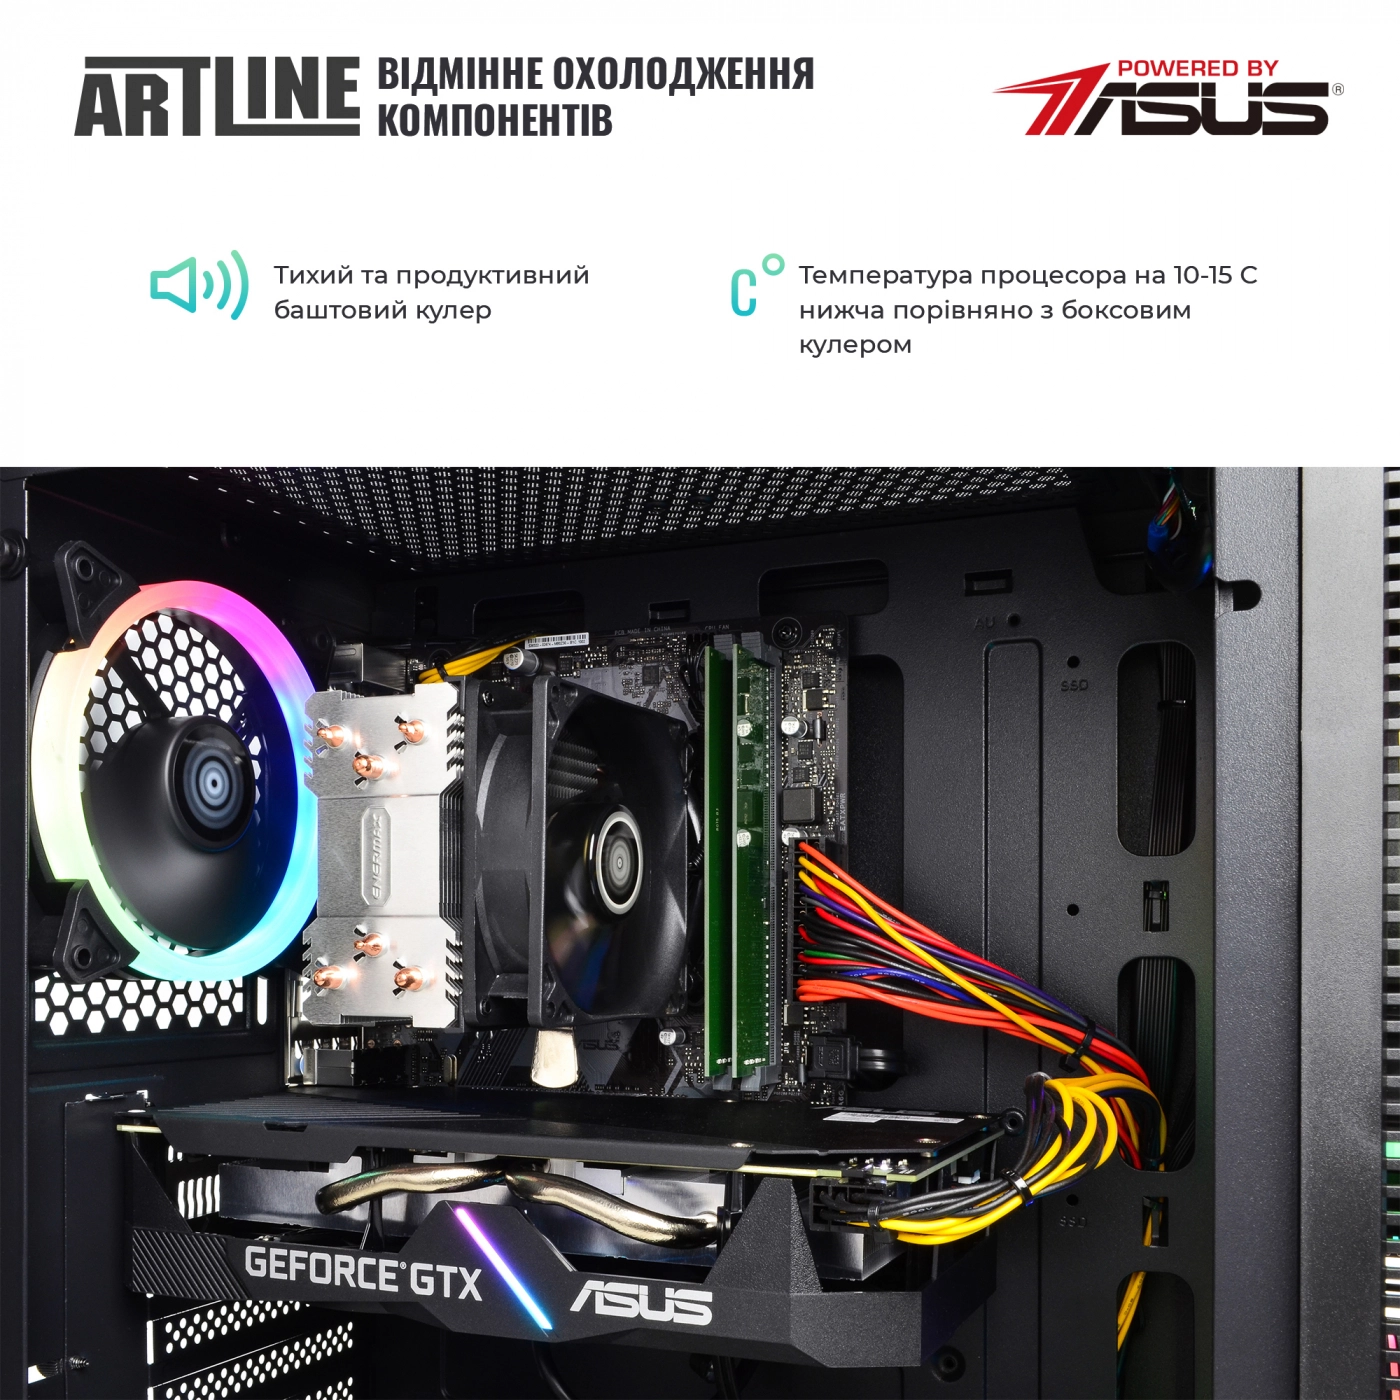 Купить Компьютер ARTLINE Gaming X65v31 - фото 3